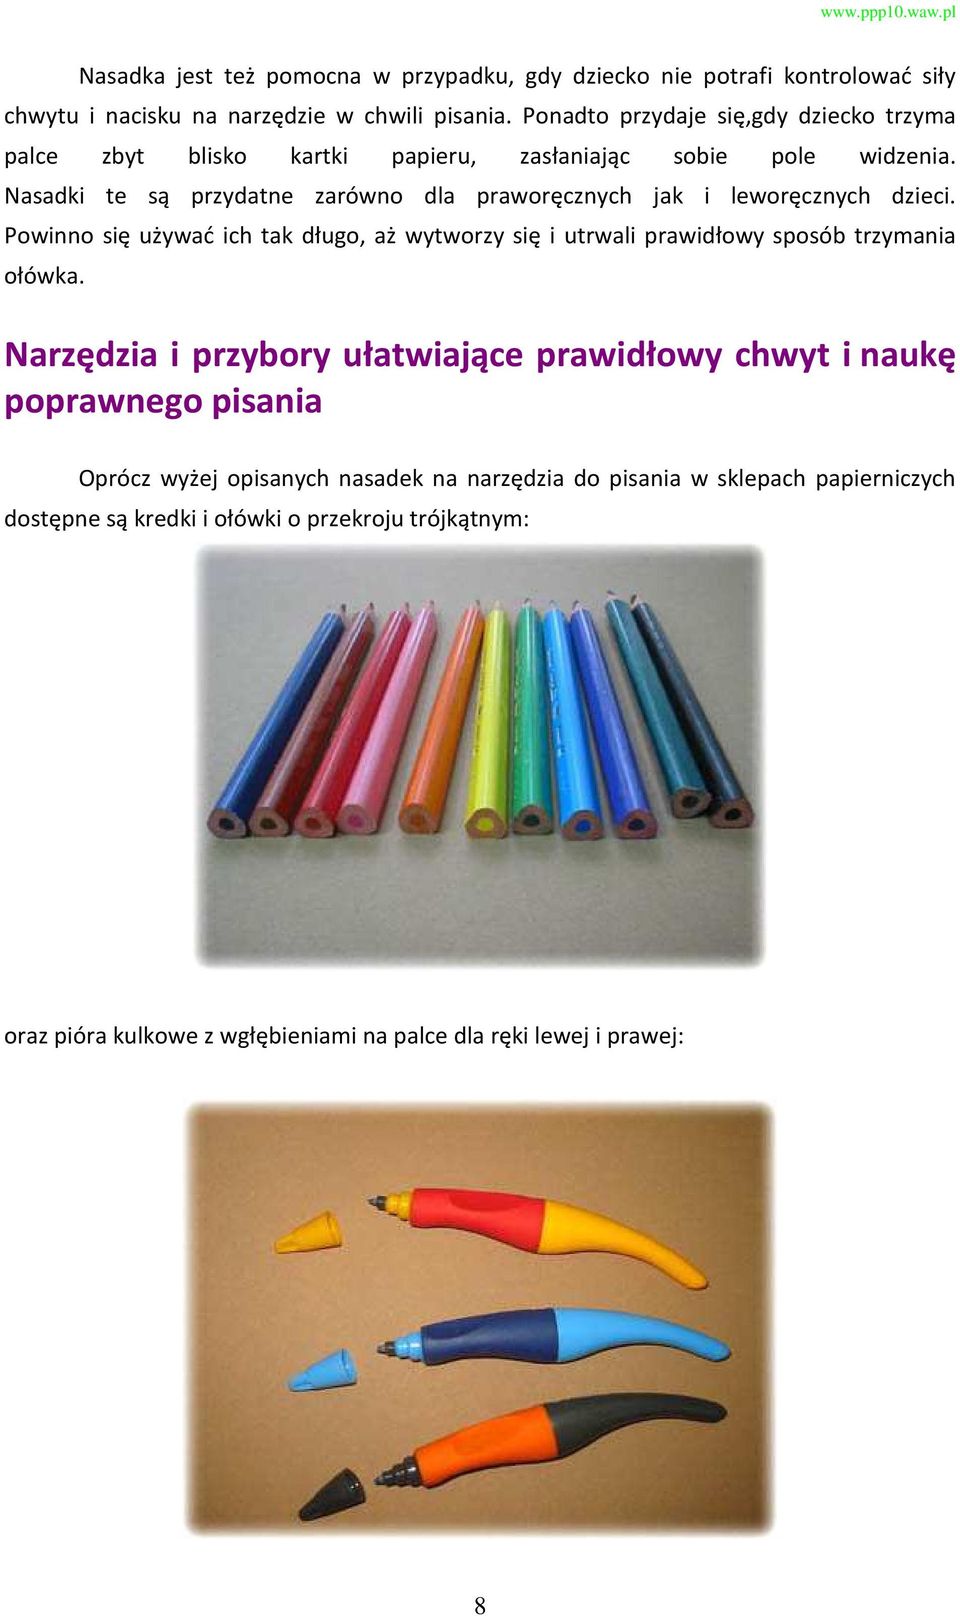 Nasadki te są przydatne zarówno dla praworęcznych jak i leworęcznych dzieci. Powinno się używać ich tak długo, aż wytworzy się i utrwali prawidłowy sposób trzymania ołówka.